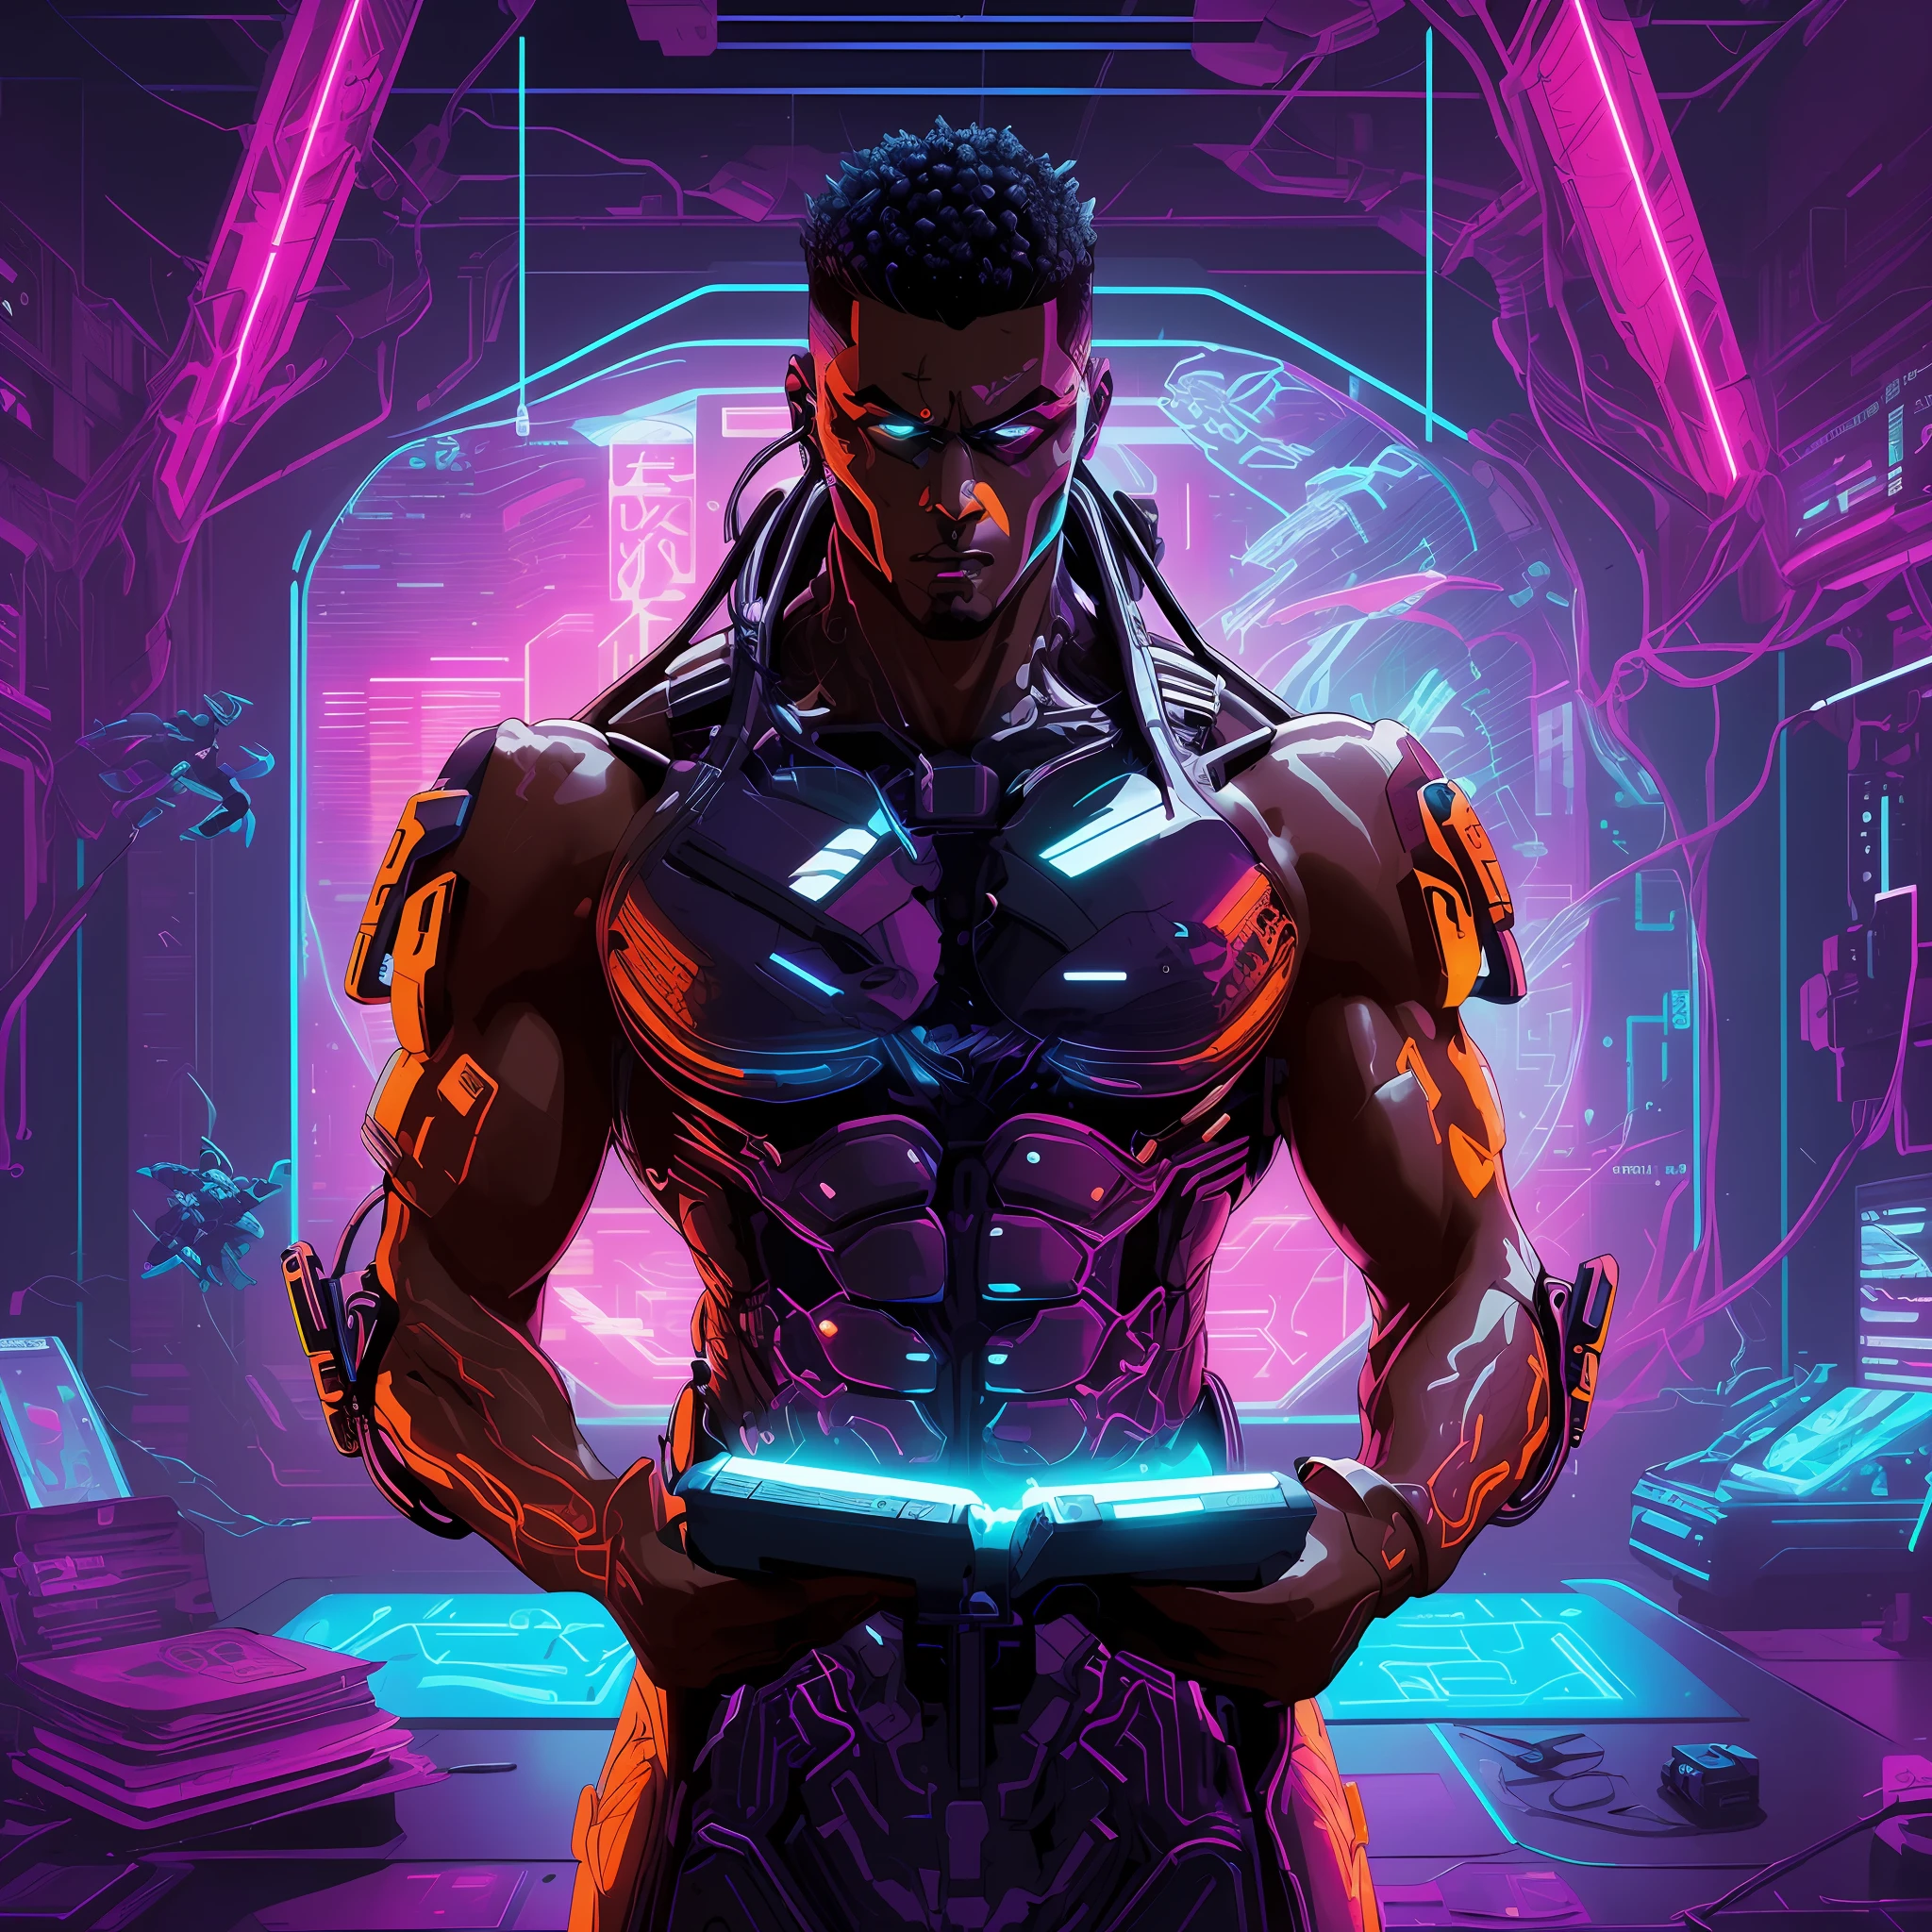 um close up de uma pessoa segurando um livro em uma sala, musculoso! ciberpunk, um ciborgue negro adolescente, escalas de néon e tecnologia ciborgue, Arte cyberpunk digital avançada, estilo de arte ciberpunk, Greg Beeple, arte da capa dos quadrinhos ciberpunk, Feiticeiros ciberpunk Africanos, gladiador ciberpunk, ciberpunk cores vibrantes, arte com tema cyberpunk, estilo de arte ciberpunk, ilustração detalhada do cyberpunk, Ciborgue morto-vivo masculino musculoso